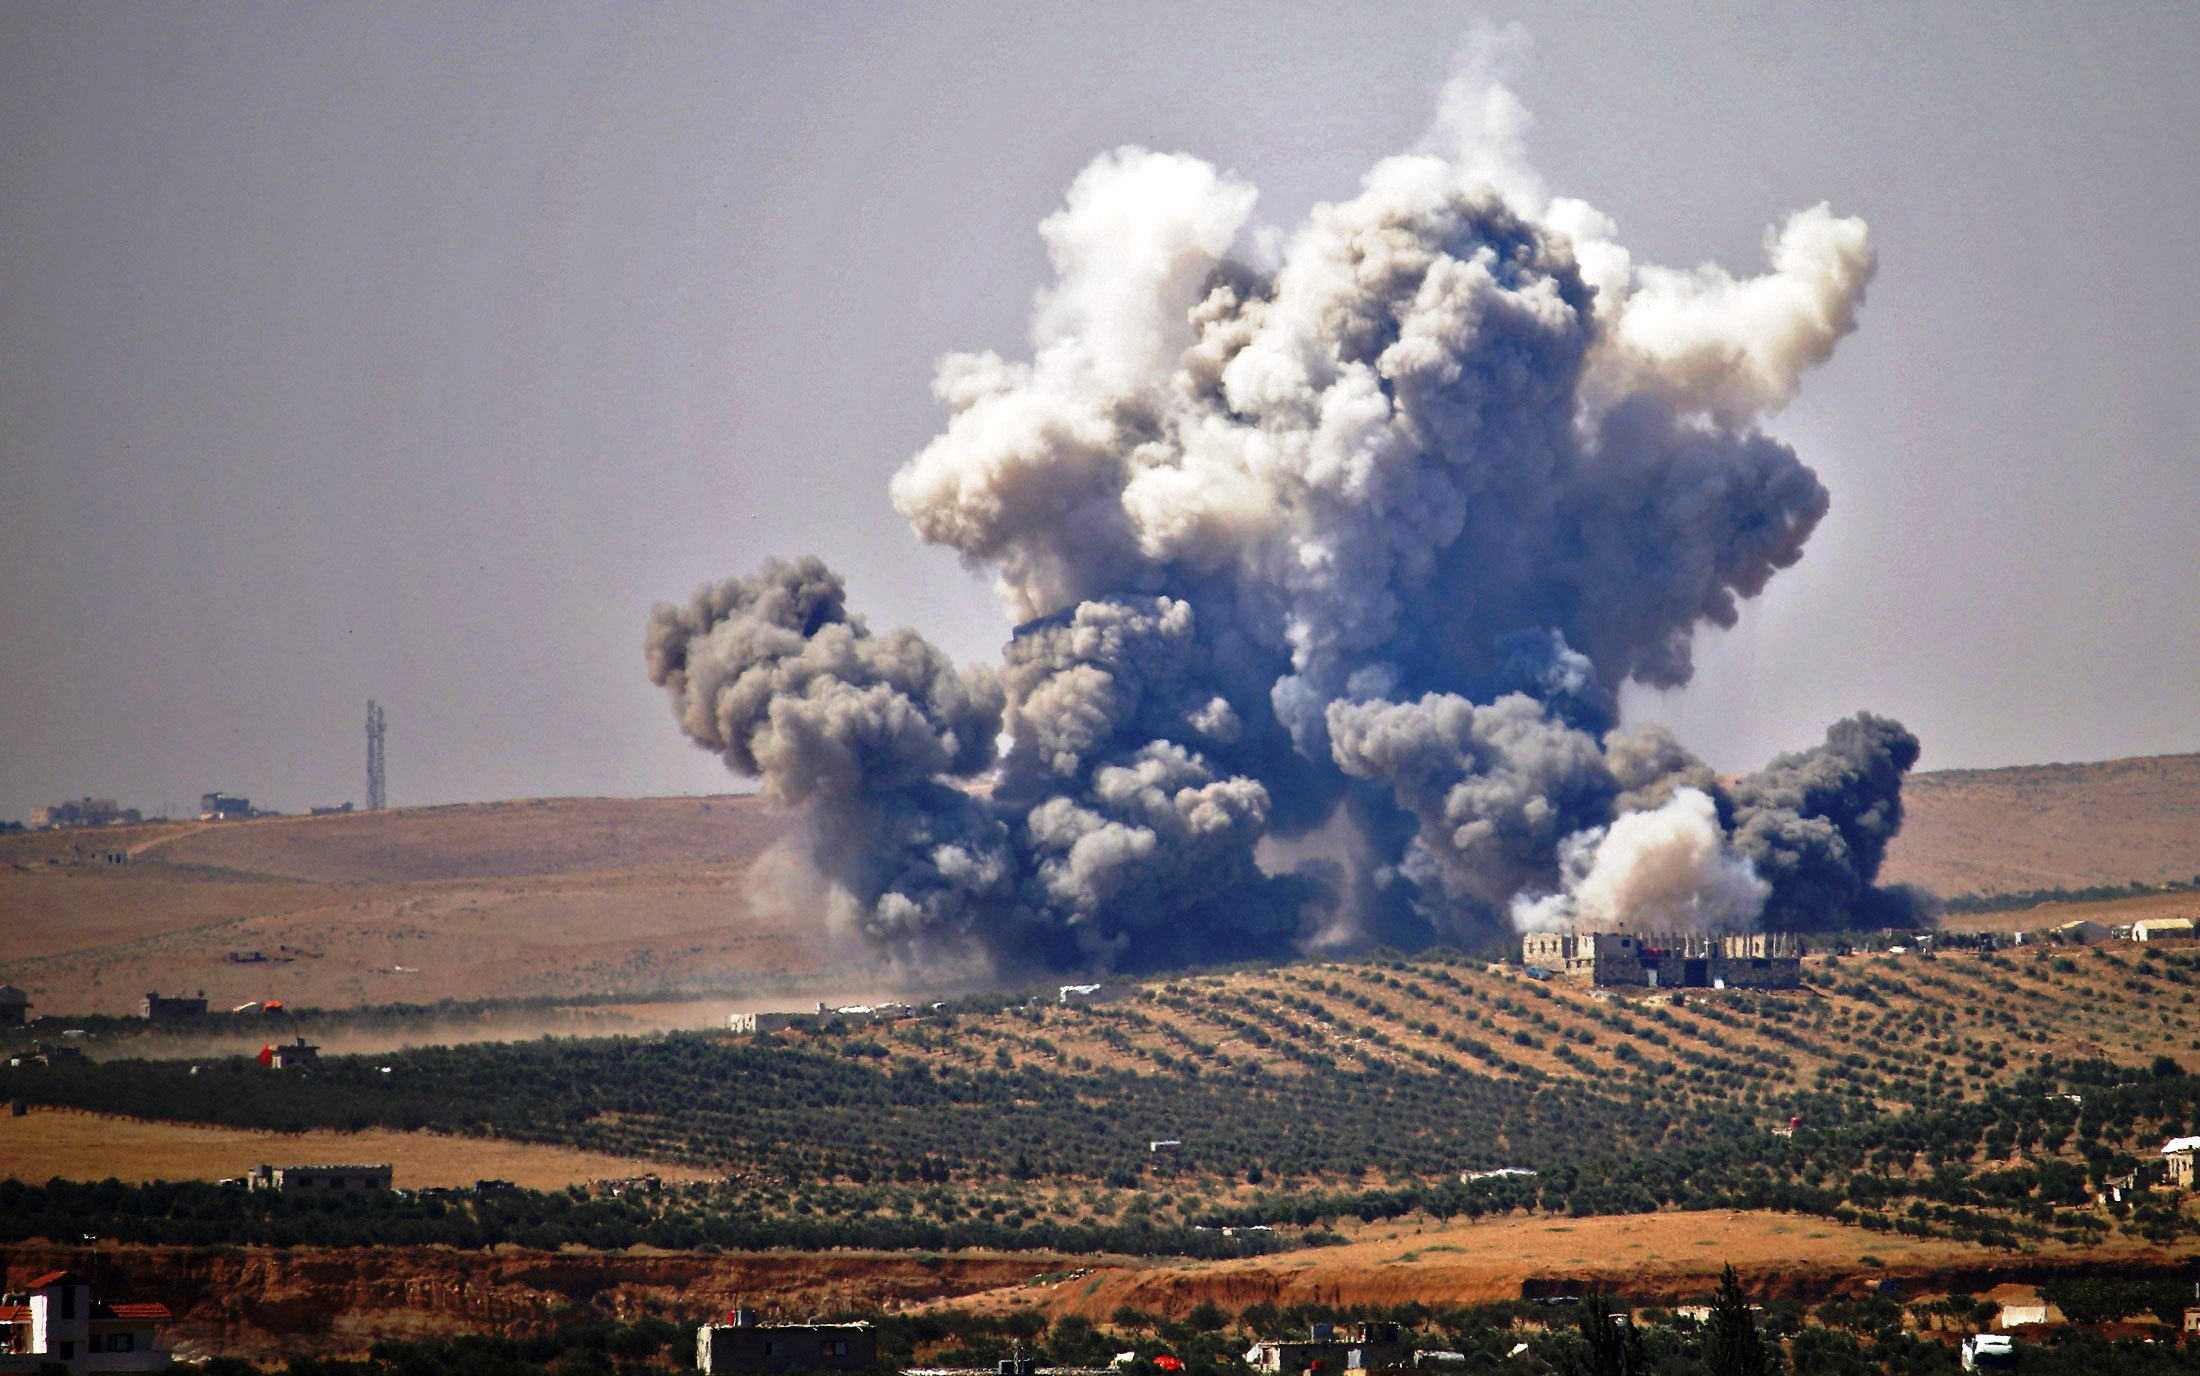 بلدات في جنوب غرب سوريا تعرضت لأعنف موجة قصف روسي وسوري